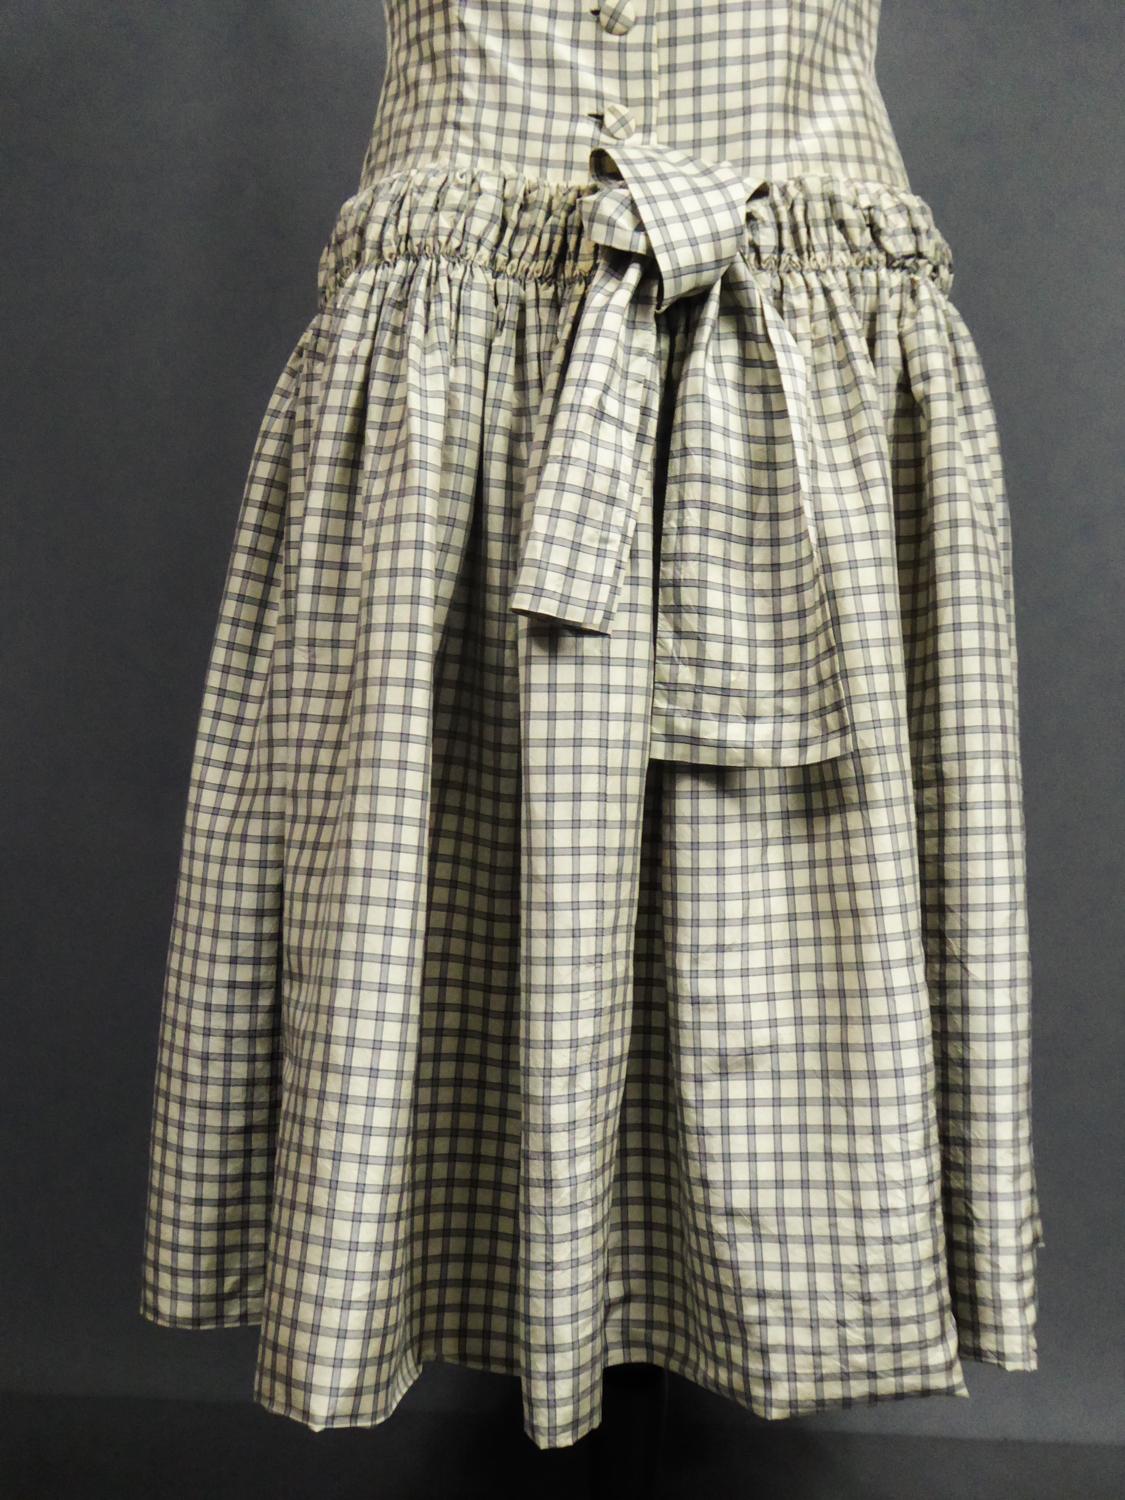 A Cristobal Balenciaga Couture Sac Dress in Plaid Taffeta n°55418 Circa 1958 7